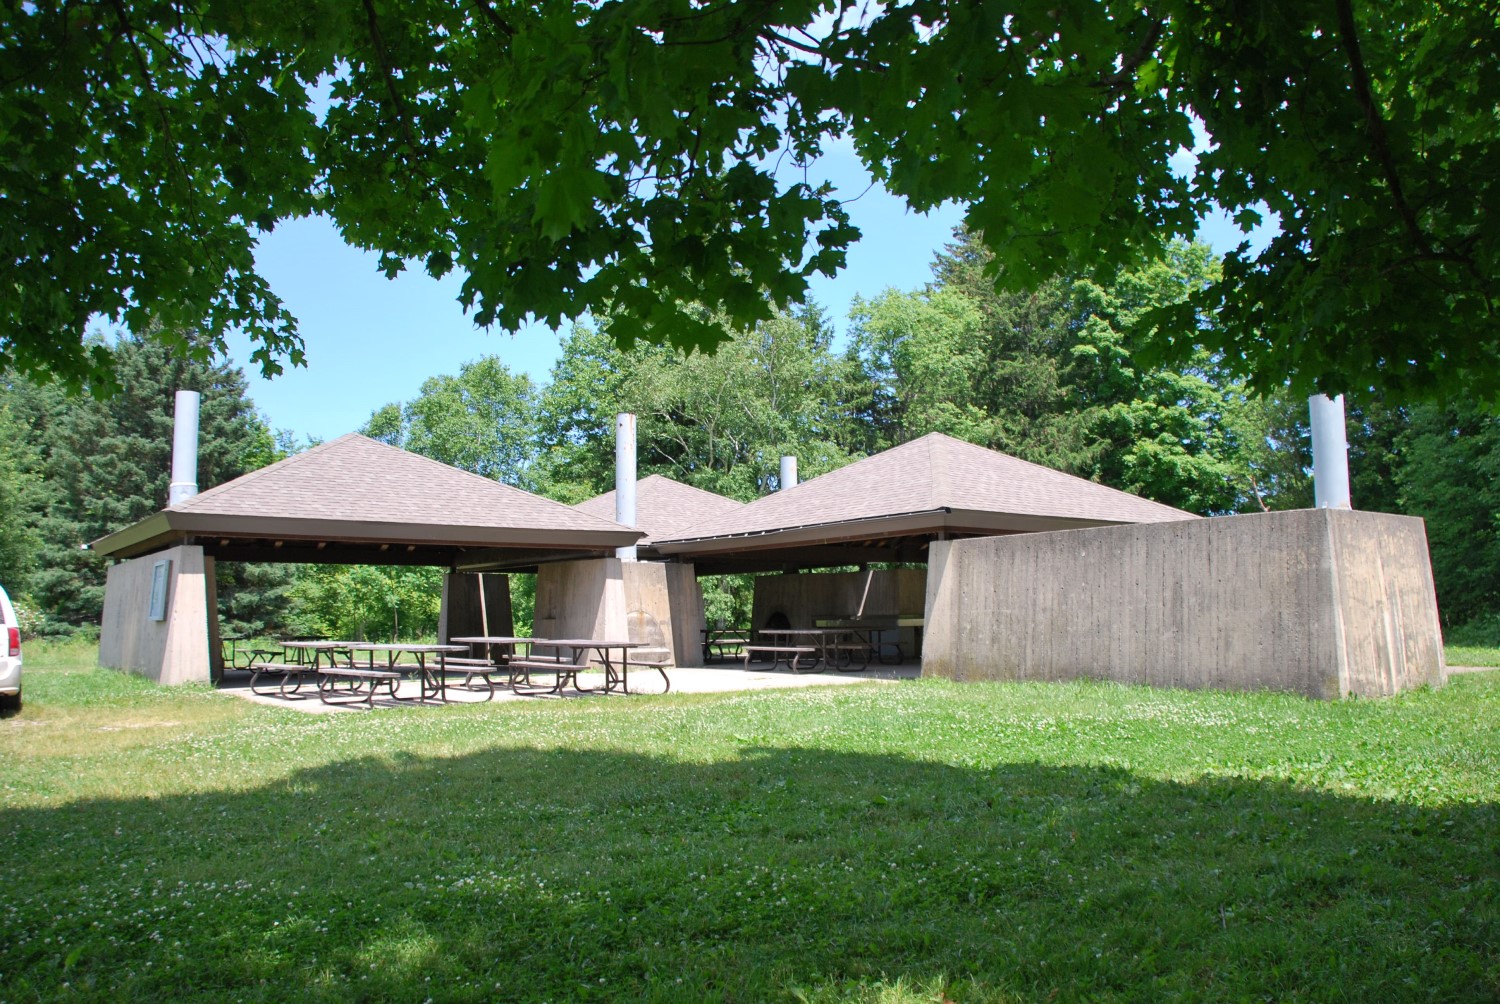 Un abri de pique-nique en ciment surmonté de deux toits en forme de pyramide. L’abri est situé en retrait dans un champ gazonné.